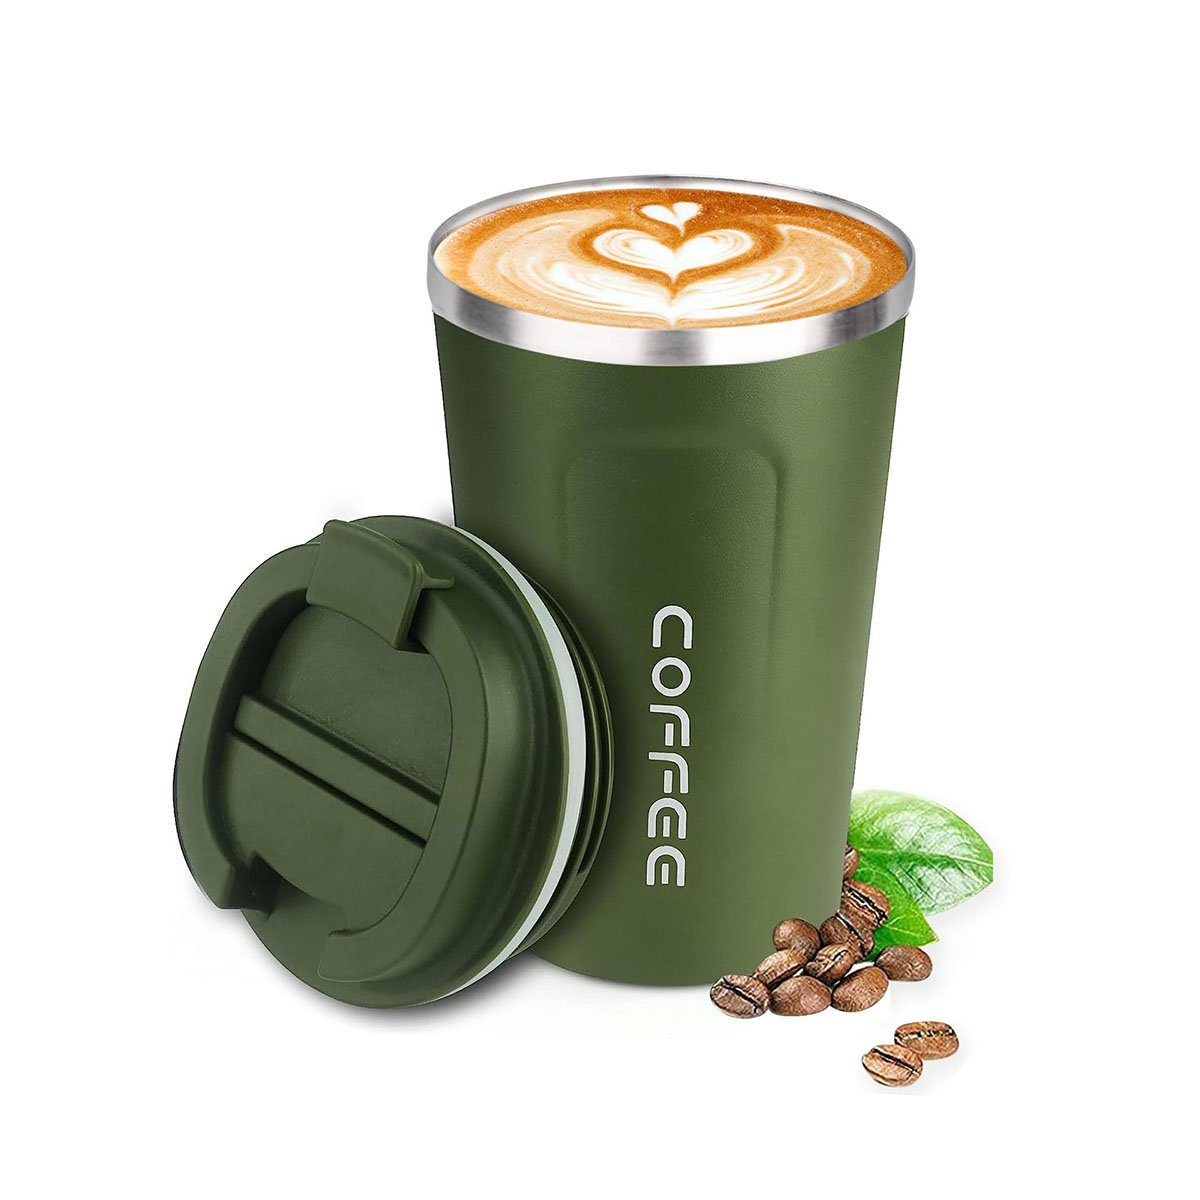 GelldG Becher Kaffeebecher mit Deckel, Thermobecher für unterwegs Umweltfreundlich. Grün